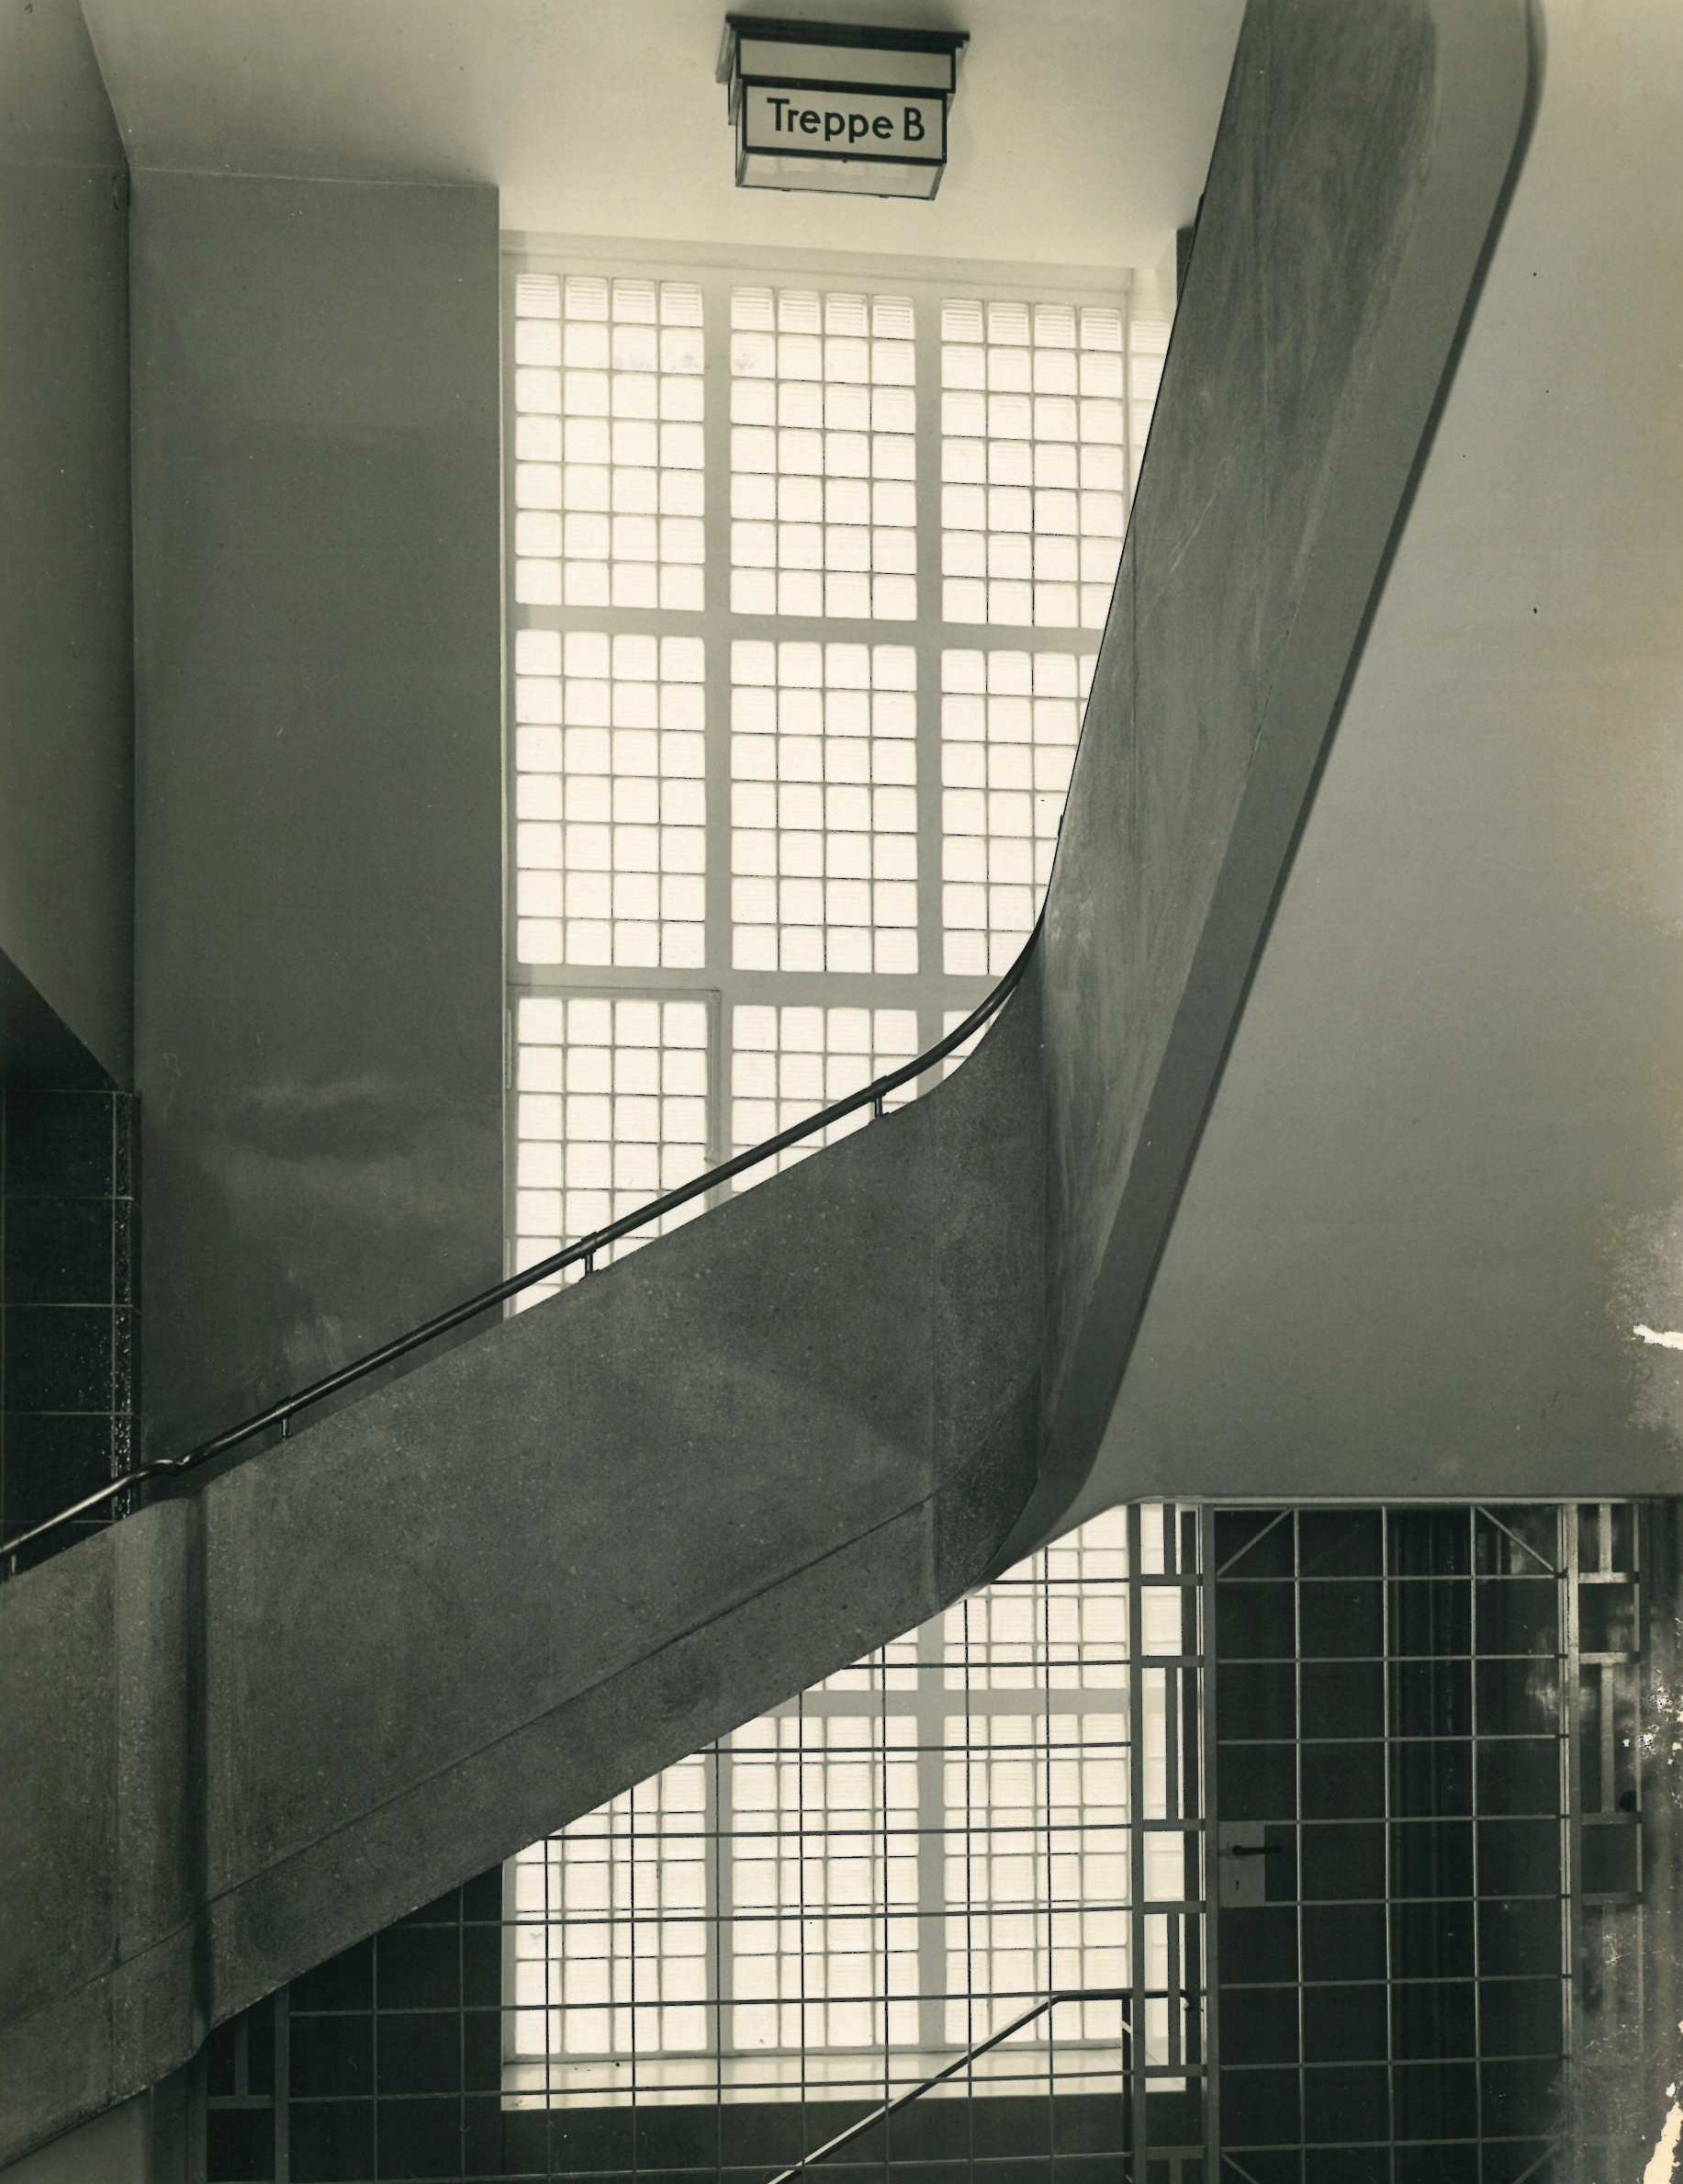 Treppenhaus B im Rathaus Wedding, ca. 1930, Fotograf: Ernst H Börner, (Mitte Museum/Bezirksamt Mitte von Berlin)